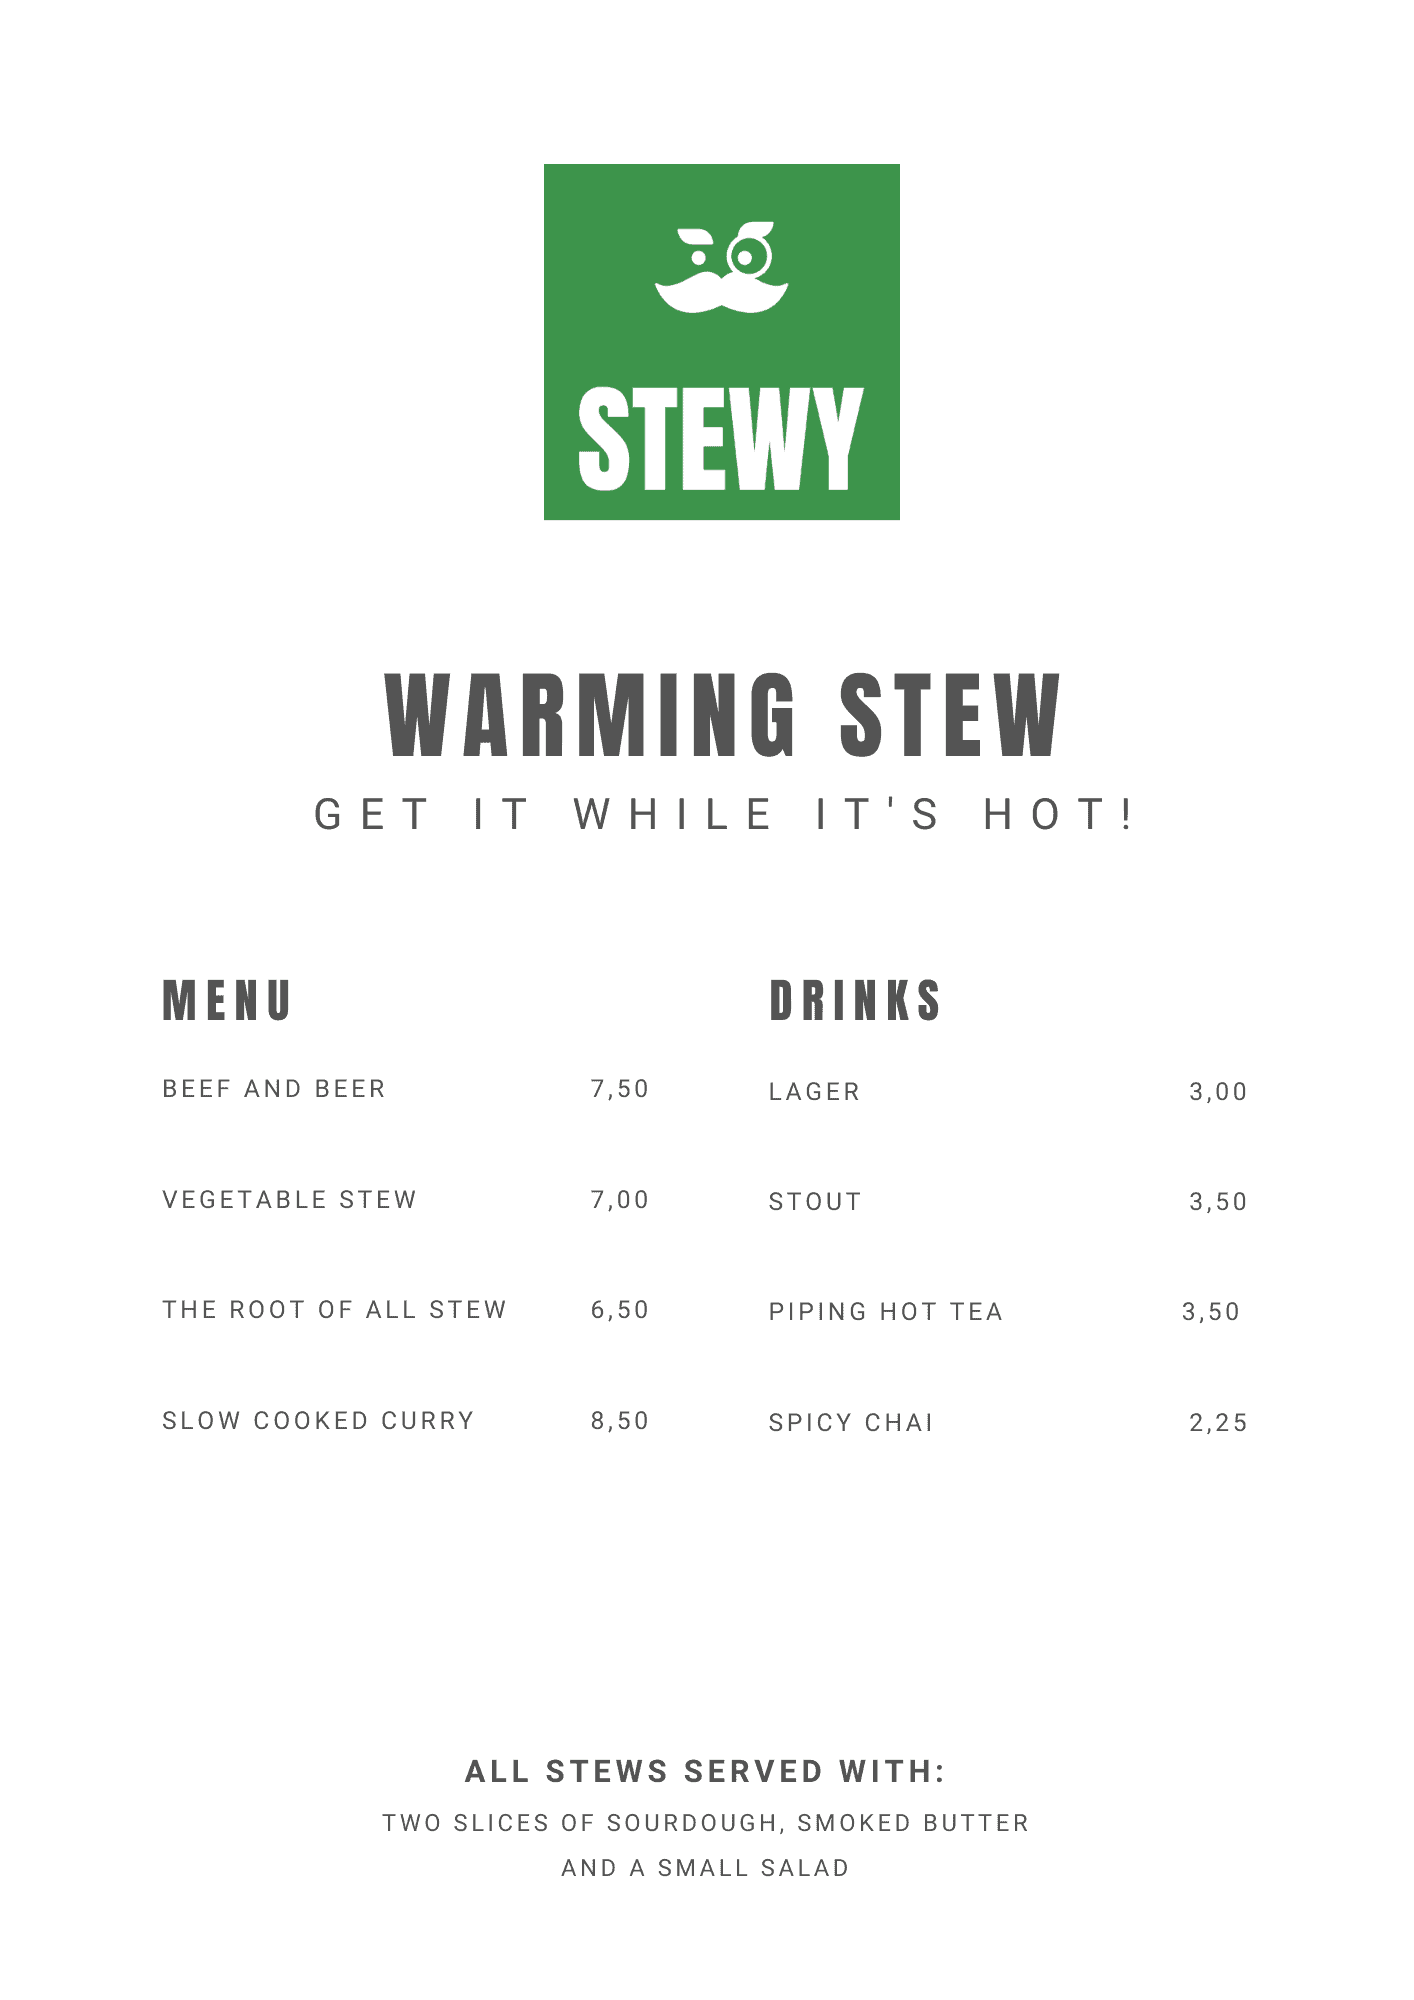 Exemple du logo Stewy sur un menu